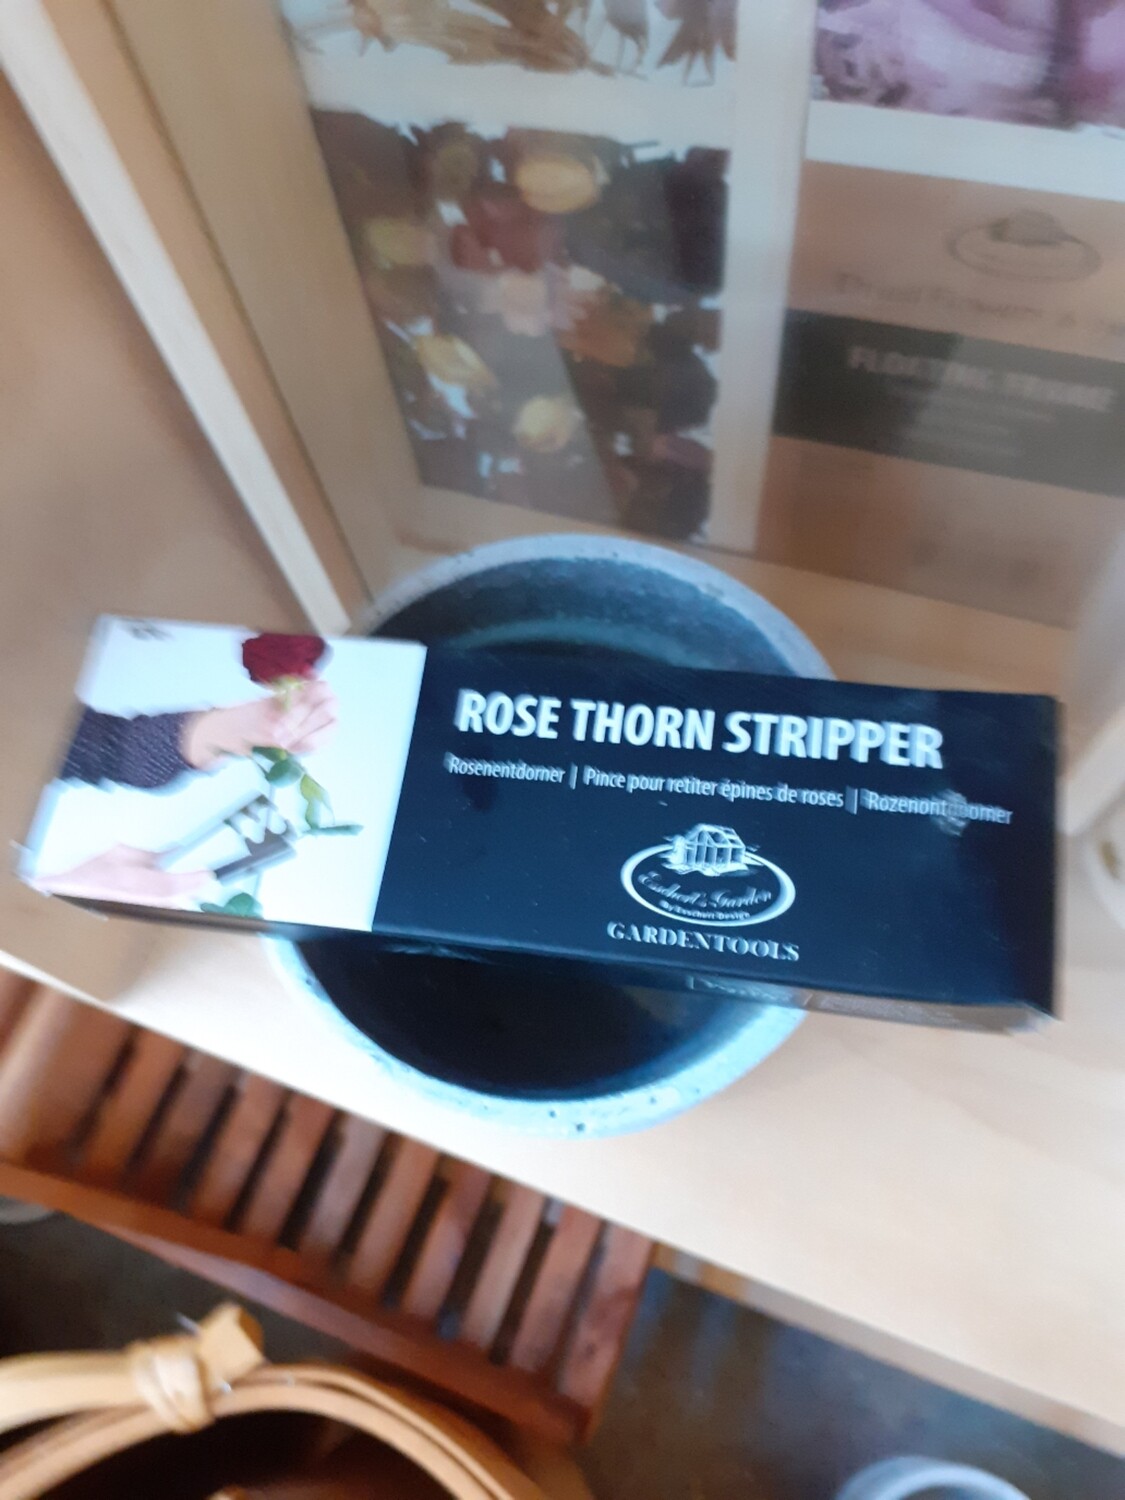 Rose thorn stripper